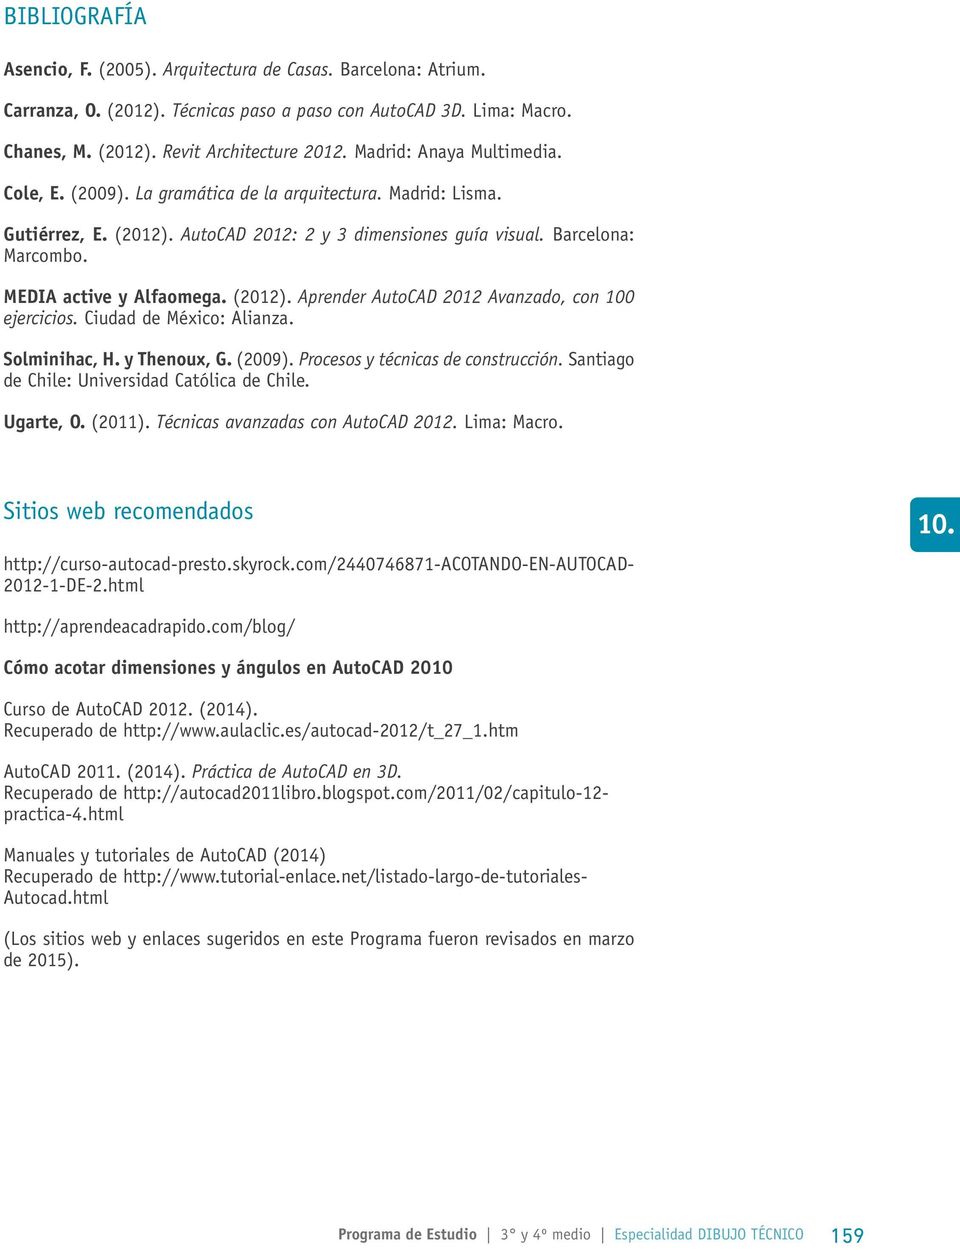 MEDIA active y Alfaomega. (2012). Aprender AutoCAD 2012 Avanzado, con 100 ejercicios. Ciudad de México: Alianza. Solminihac, H. y Thenoux, G. (2009). Procesos y técnicas de construcción.